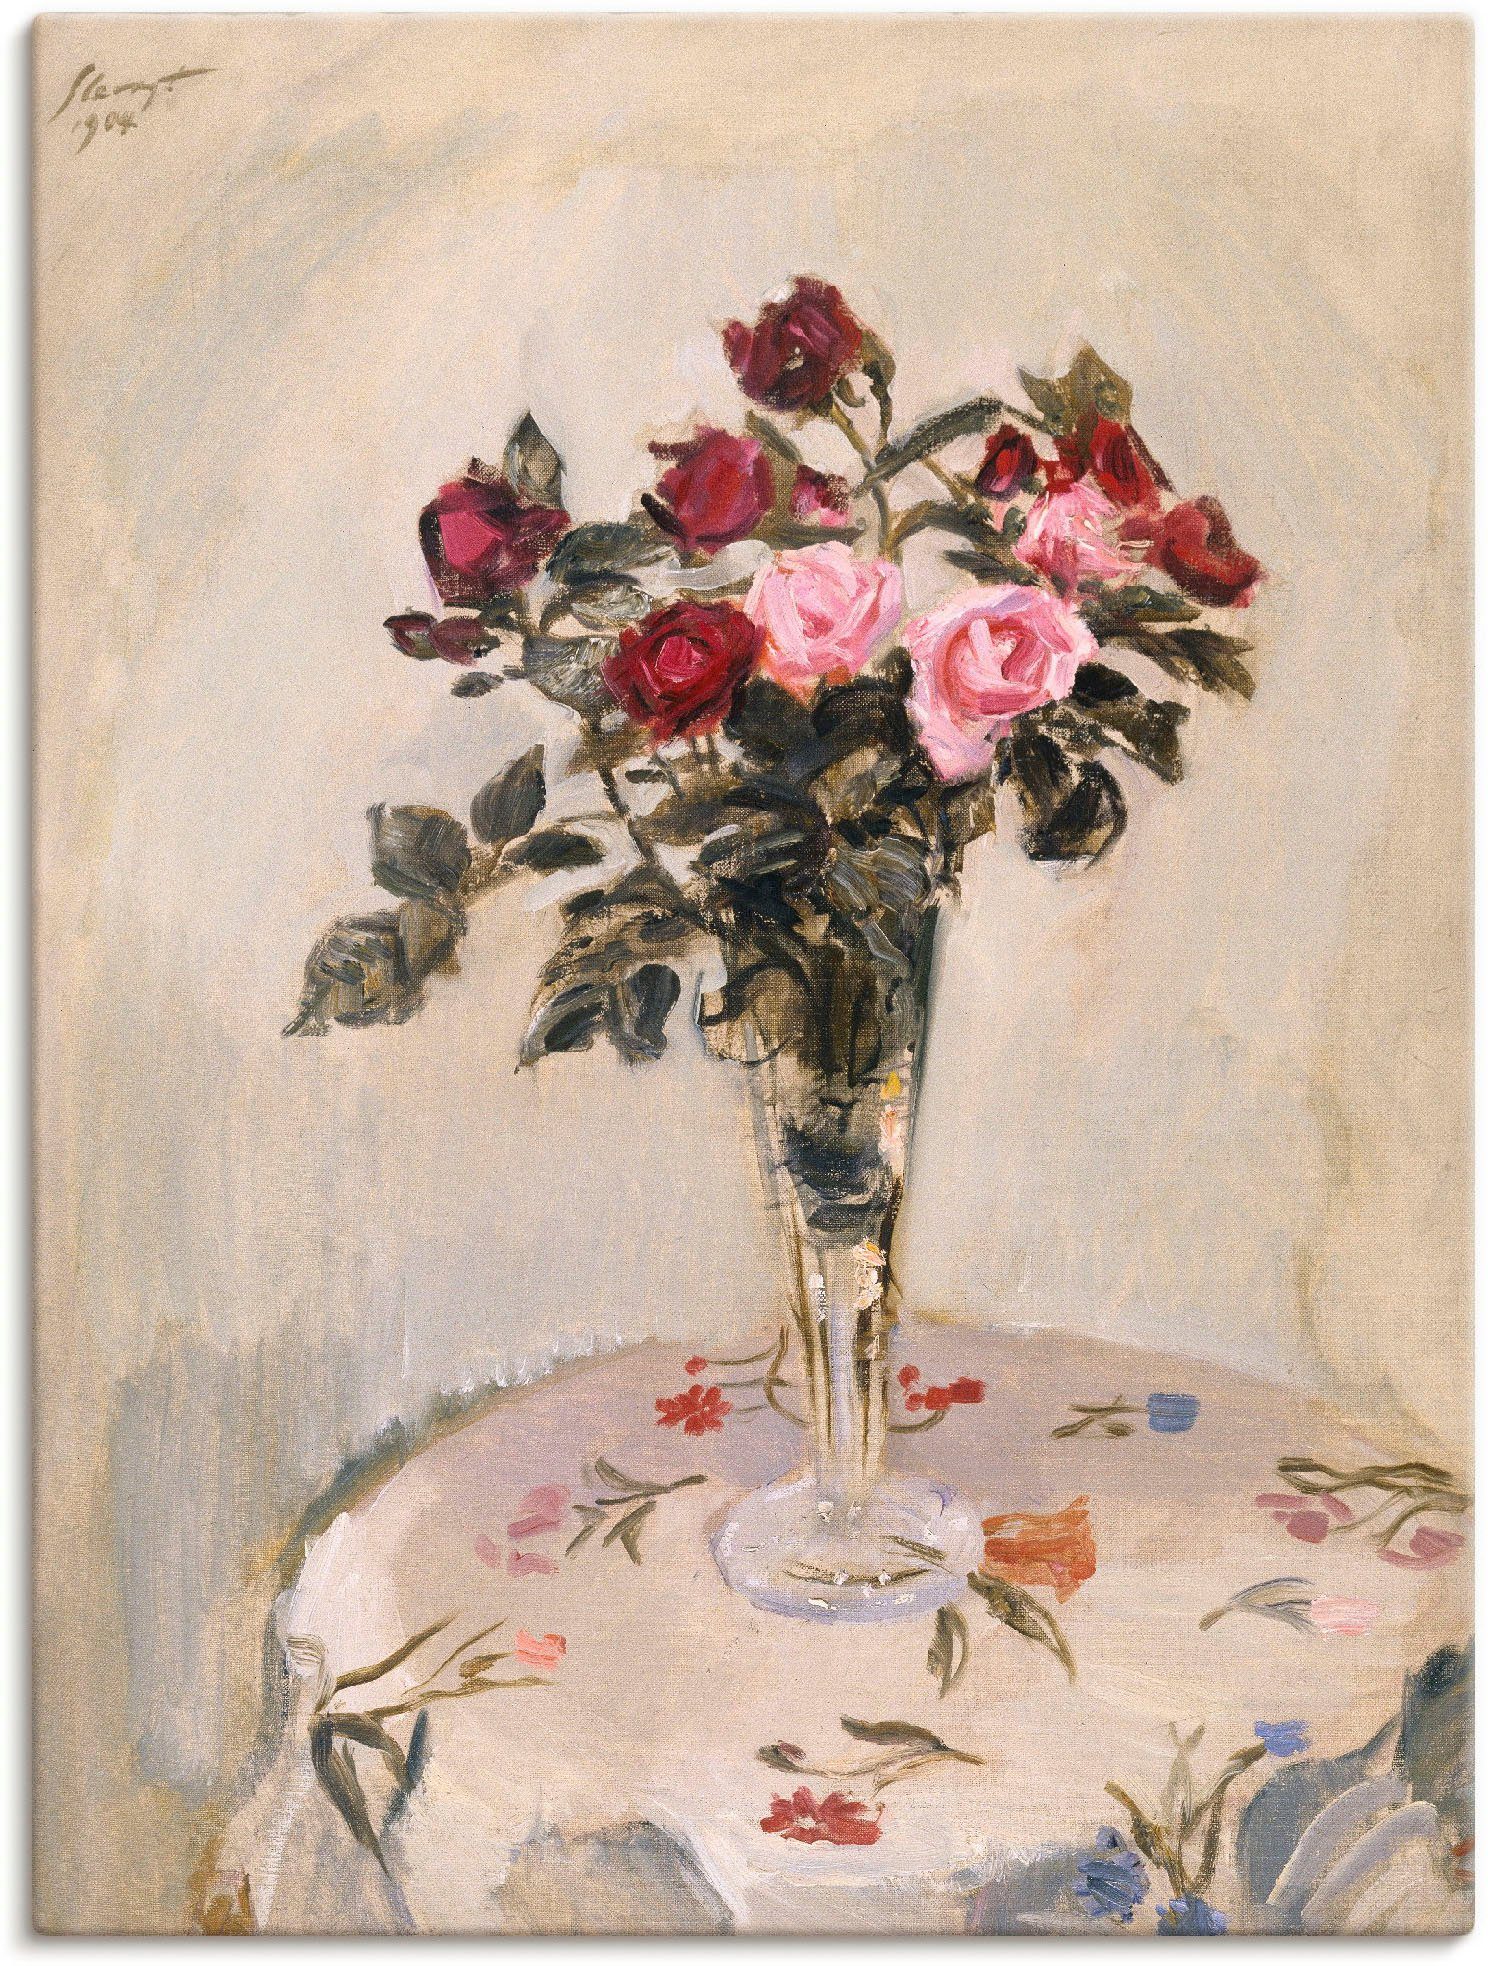 Artland Artprint Stilleven met rozen. 1904 in vele afmetingen & productsoorten -artprint op linnen, poster, muursticker / wandfolie ook geschikt voor de badkamer (1 stuk)